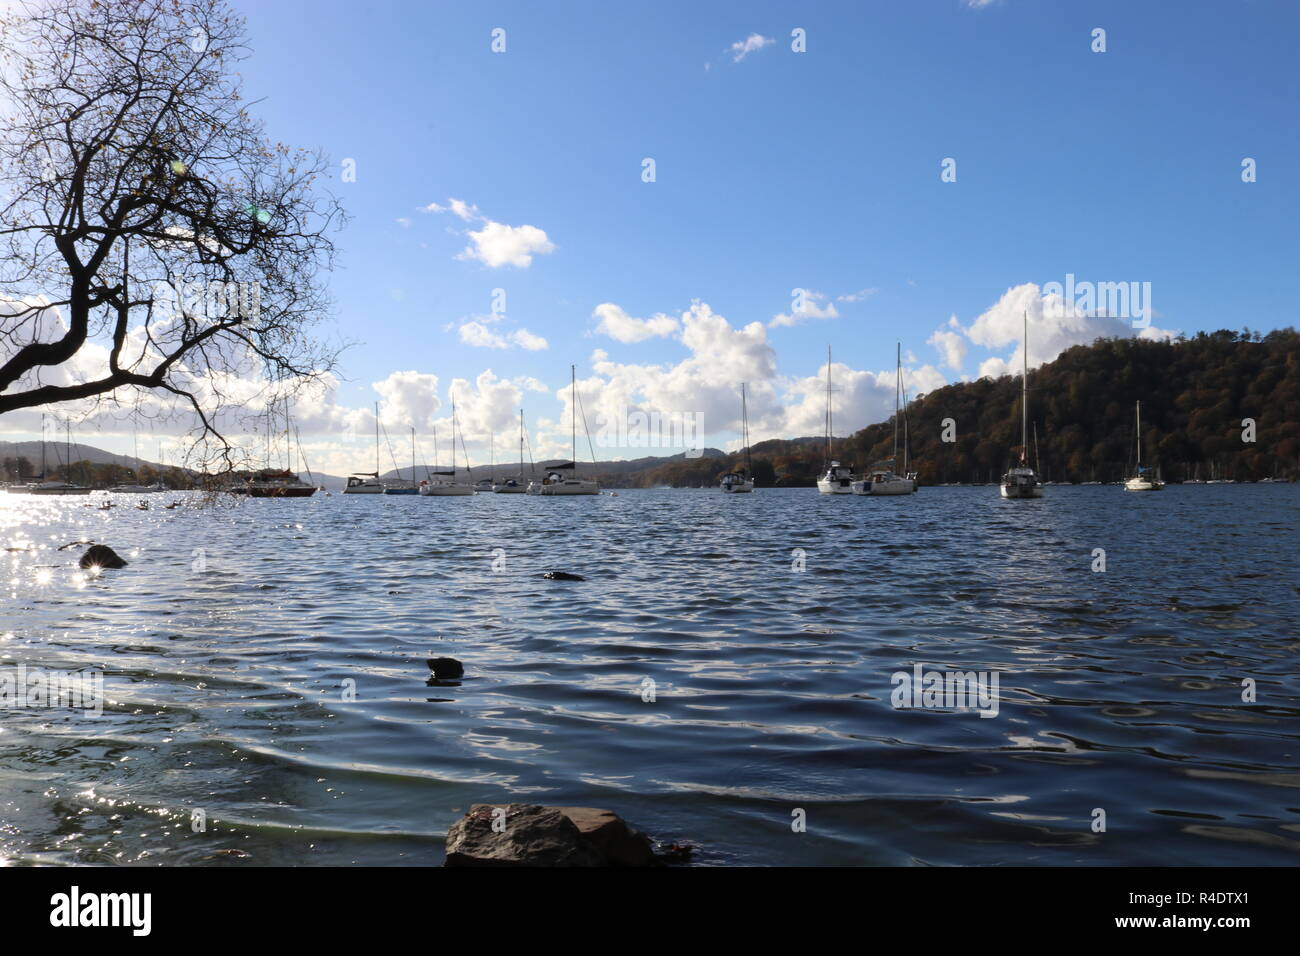 Lago di Windermere come vedere dalle banche di Bowness-on-Windermere su un soleggiato inverni giorno con barche ormeggiate. Lake District, Inghilterra, Regno Unito. Foto Stock